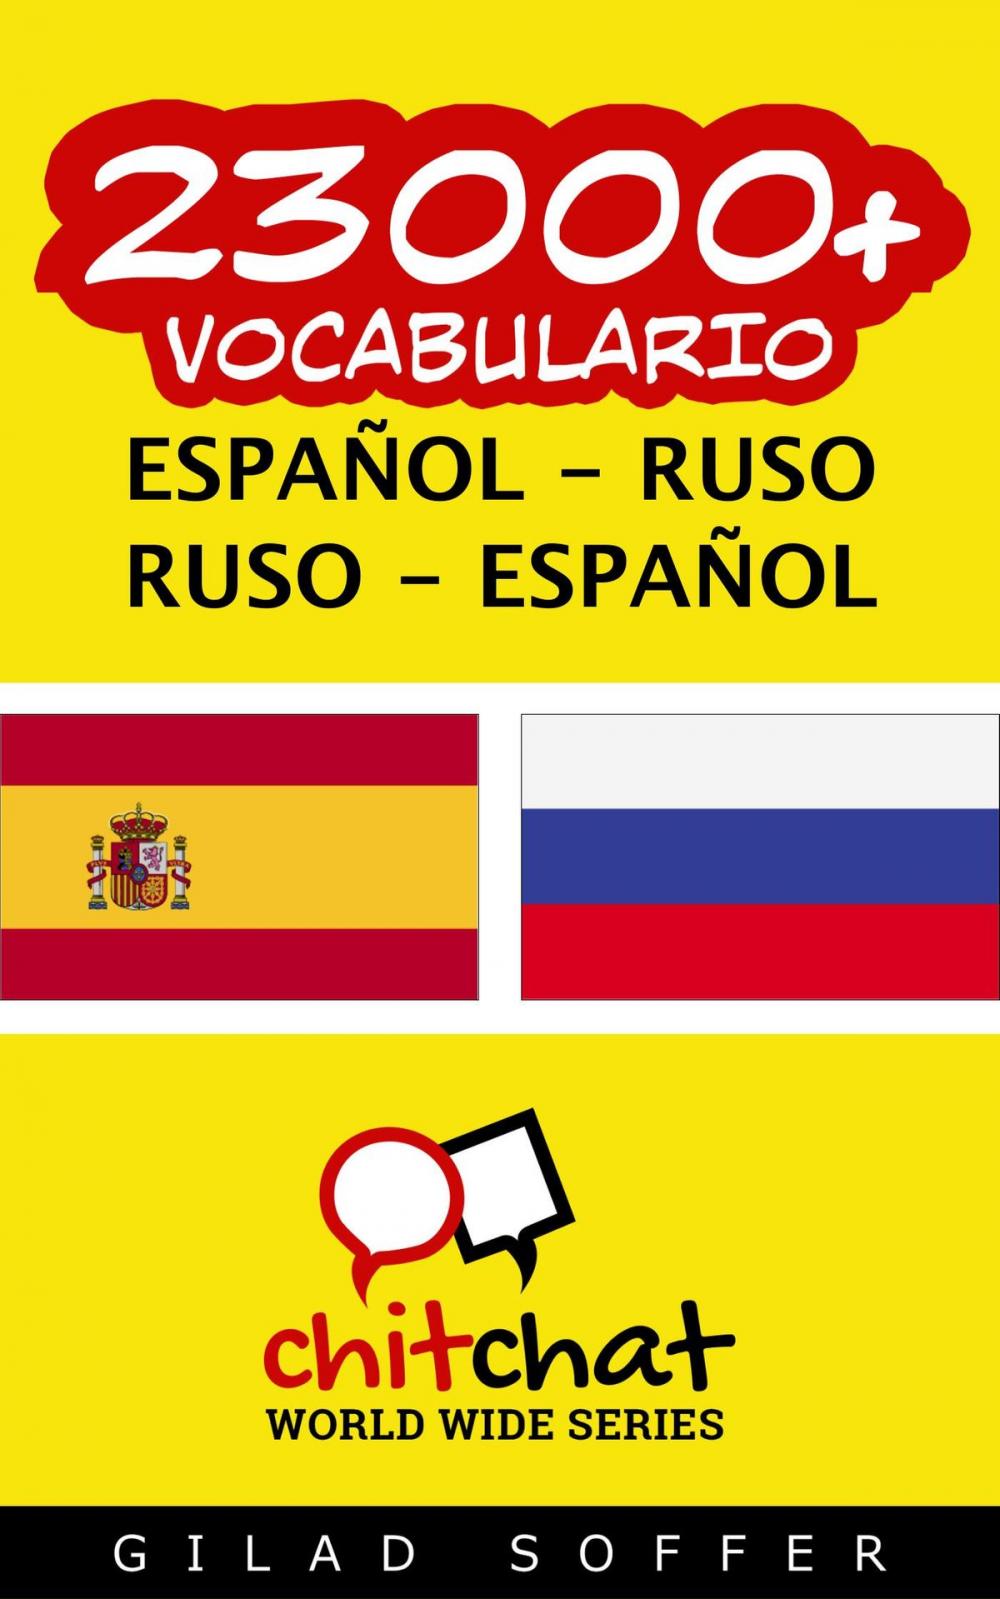 Big bigCover of 23000+ vocabulario español - ruso